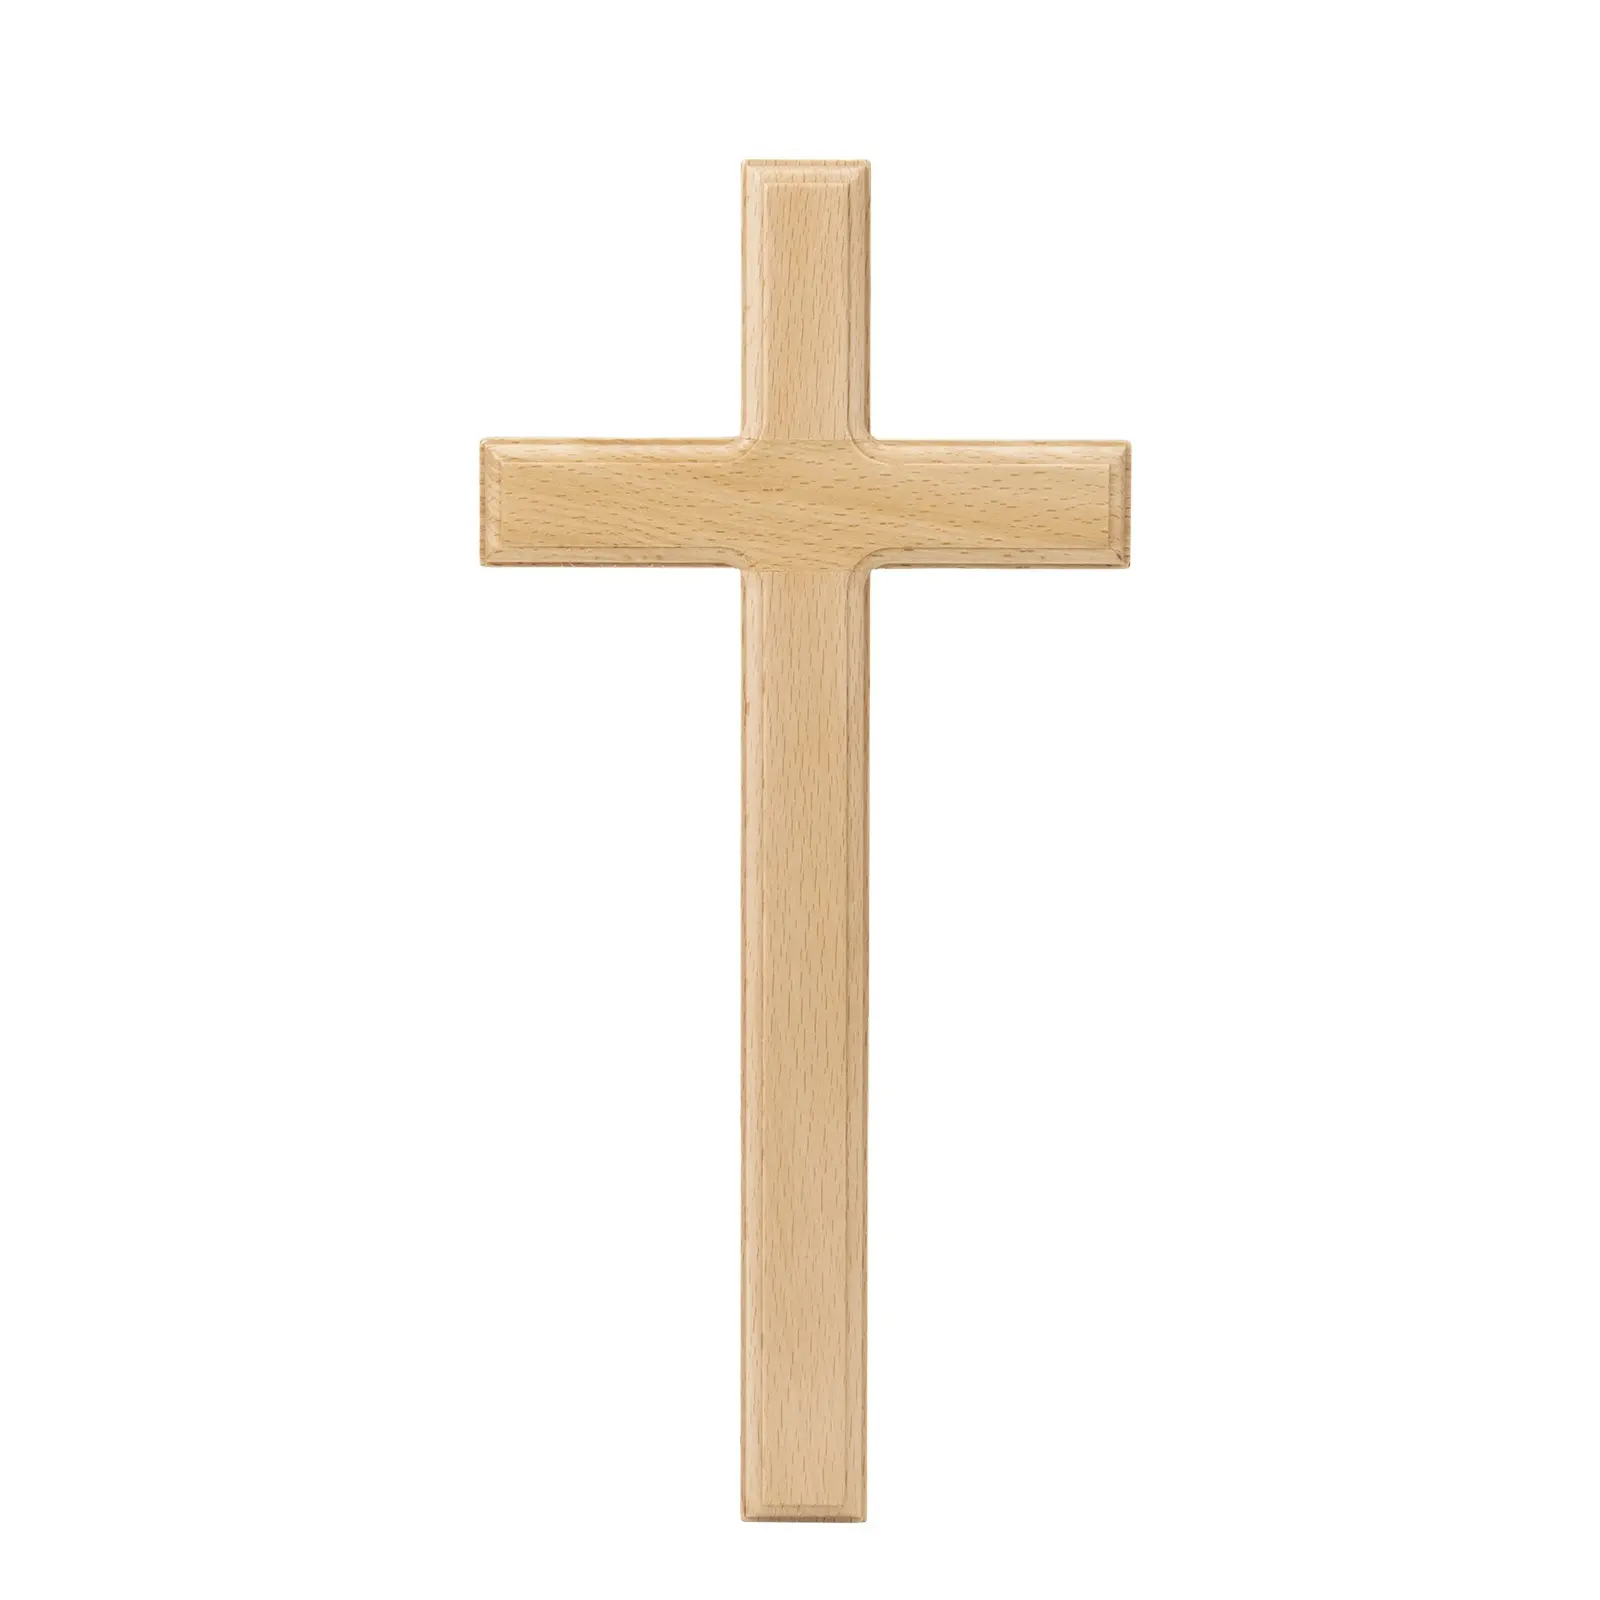 Vente en gros de panneaux muraux suspendus en bois, plaque en bois, croix chrétienne suspendue en bois pour mur